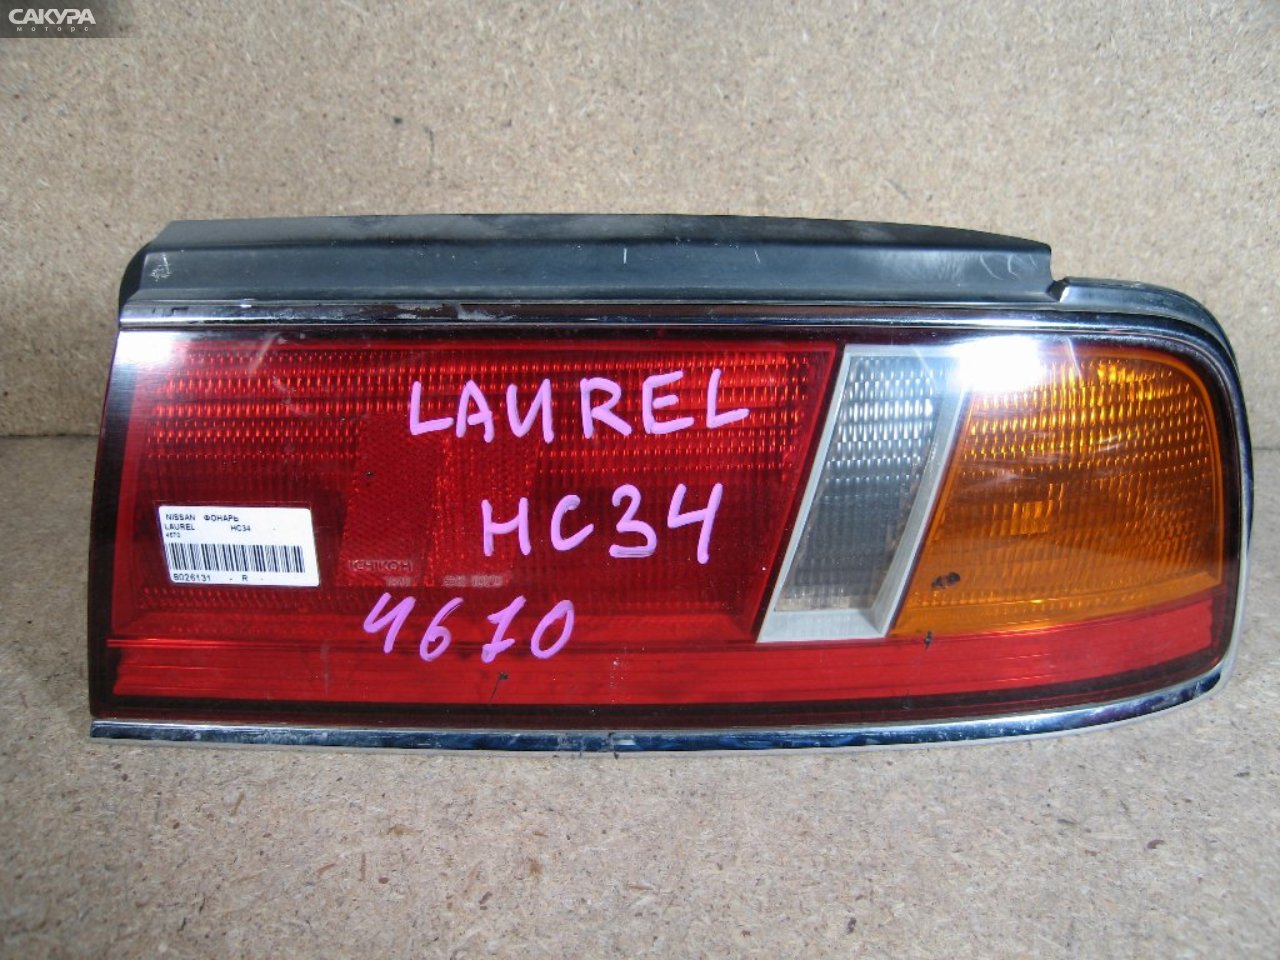 Фонарь стоп-сигнала правый Nissan Laurel HC34 4670: купить в Сакура Абакан.